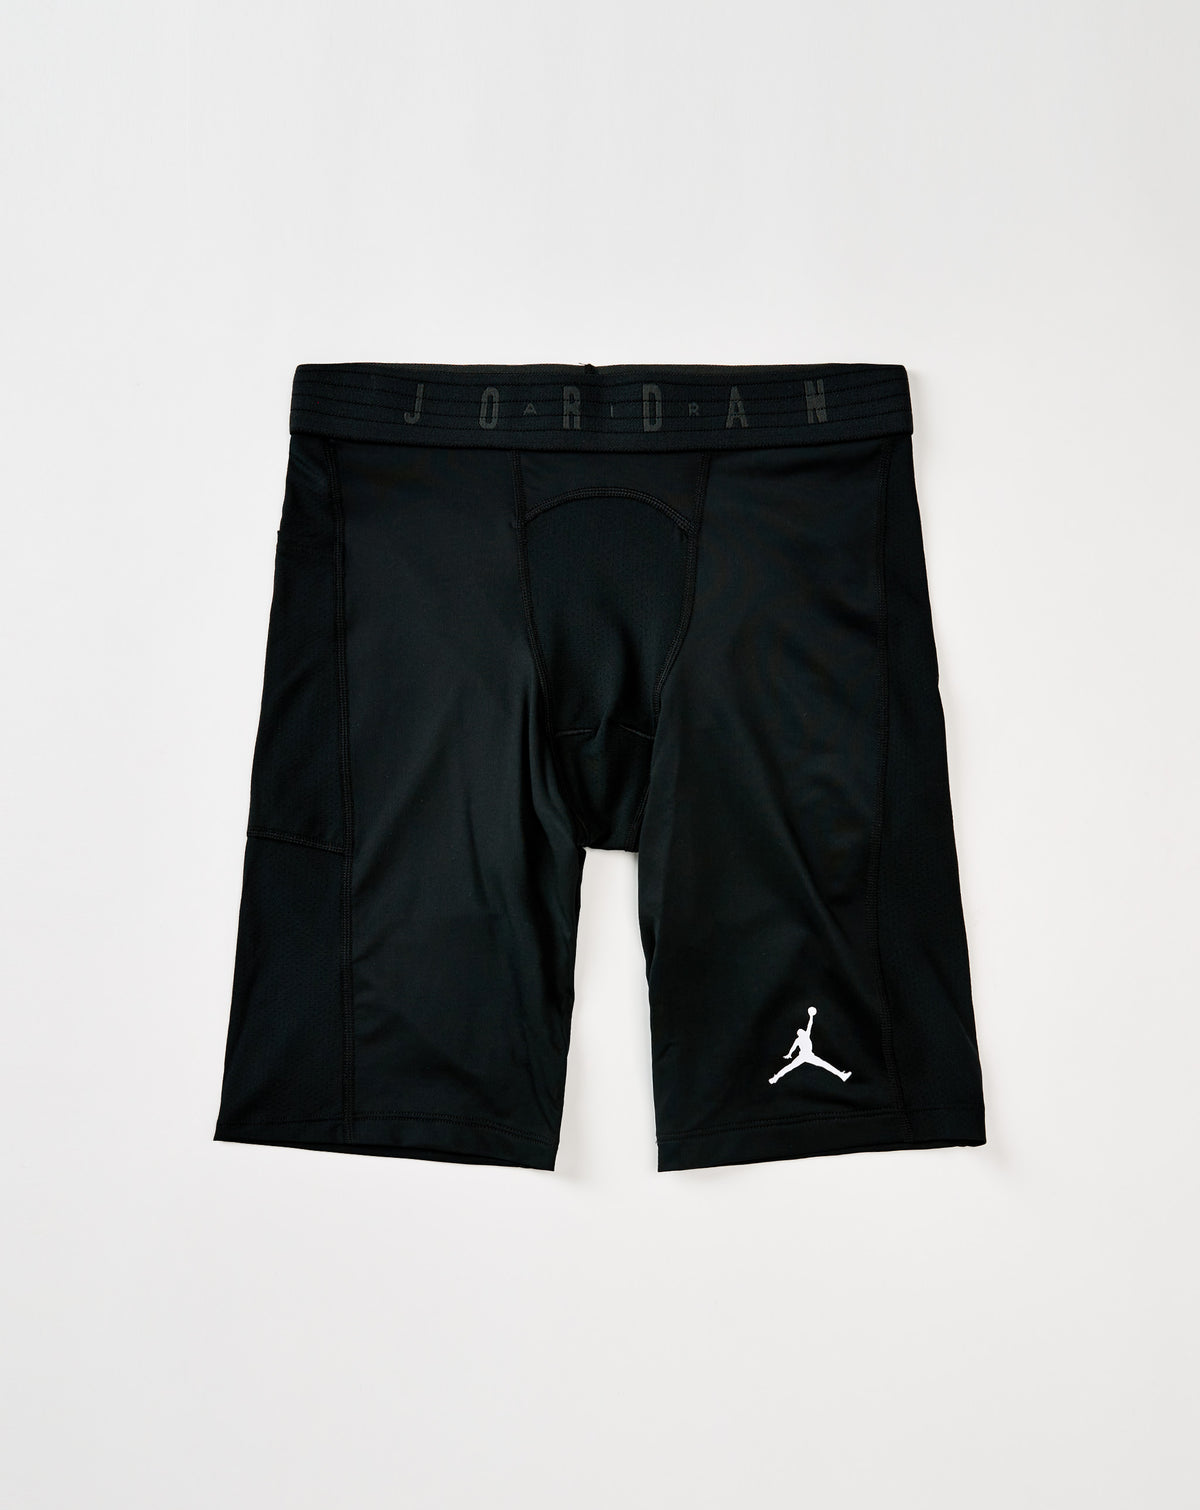 Air Jordan Jordan Sport Dri-FIT Shorts - Rule of Next Apparel